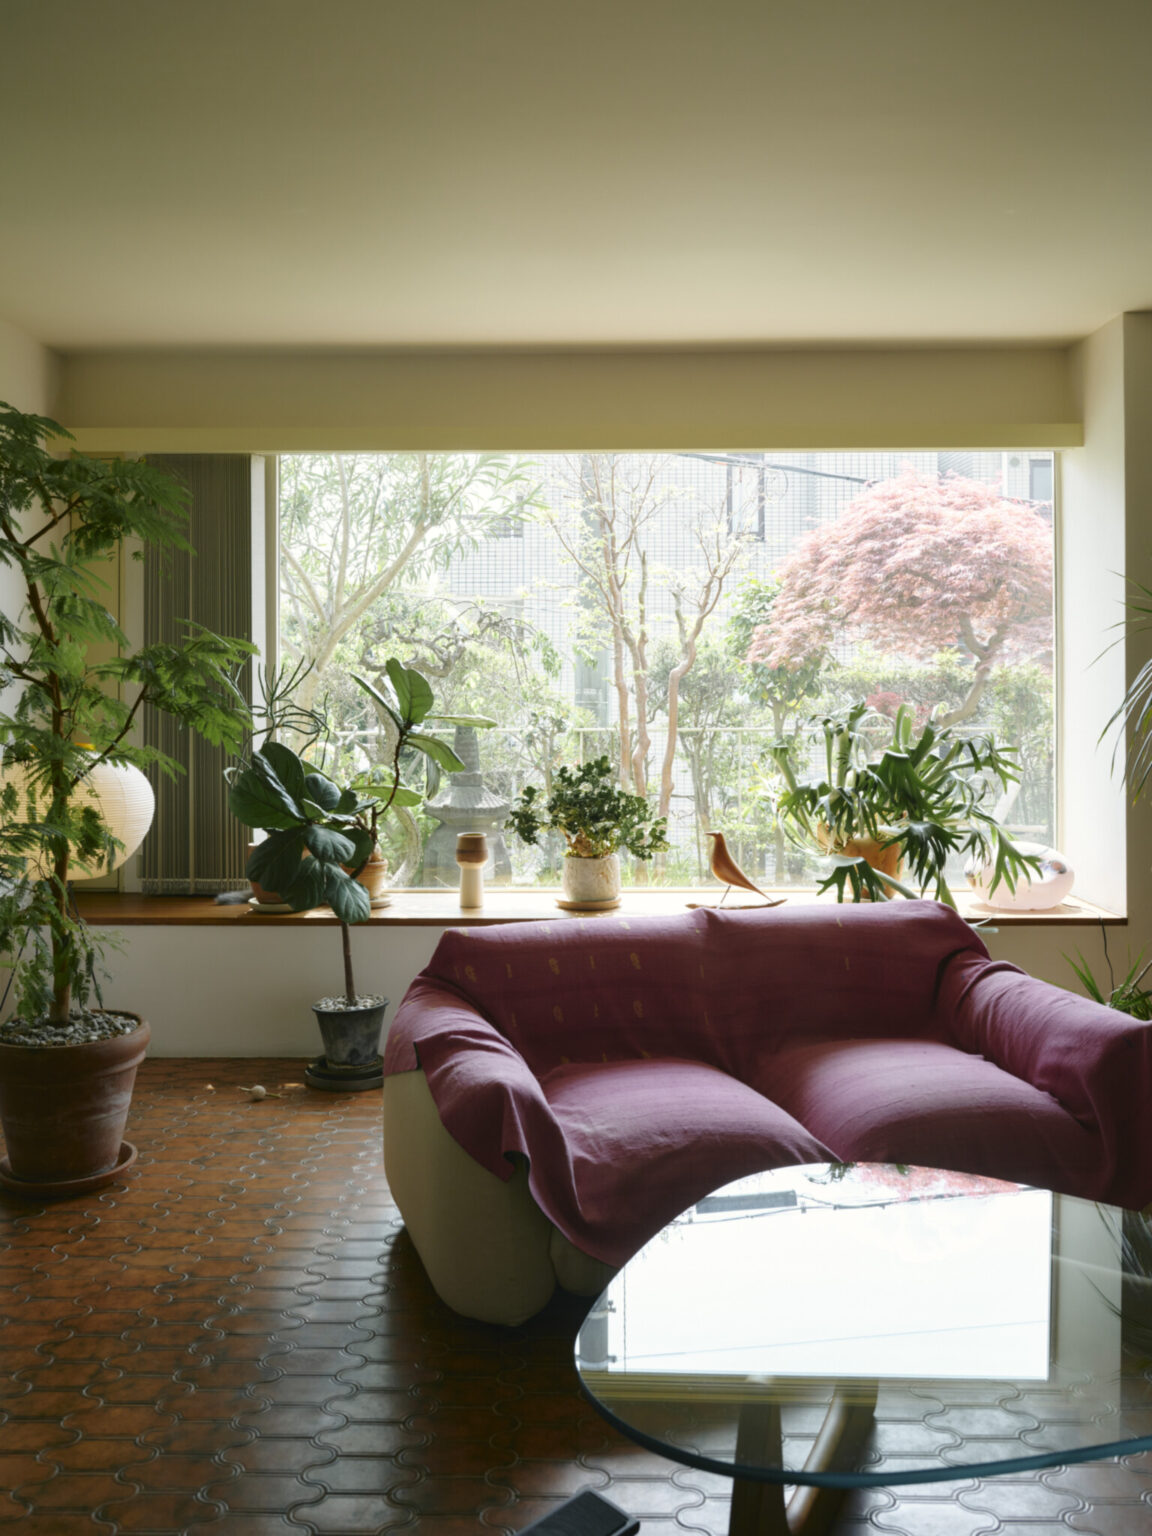 リビングの窓からは一日中日差しがよく入る。植物の緑が煉瓦色のタイルの床に映える。マレンコのソファに掛けている布は高知の〈海花布土木（はなふどき）〉で購入。落ち着いたピンクがインテリアのアクセント。